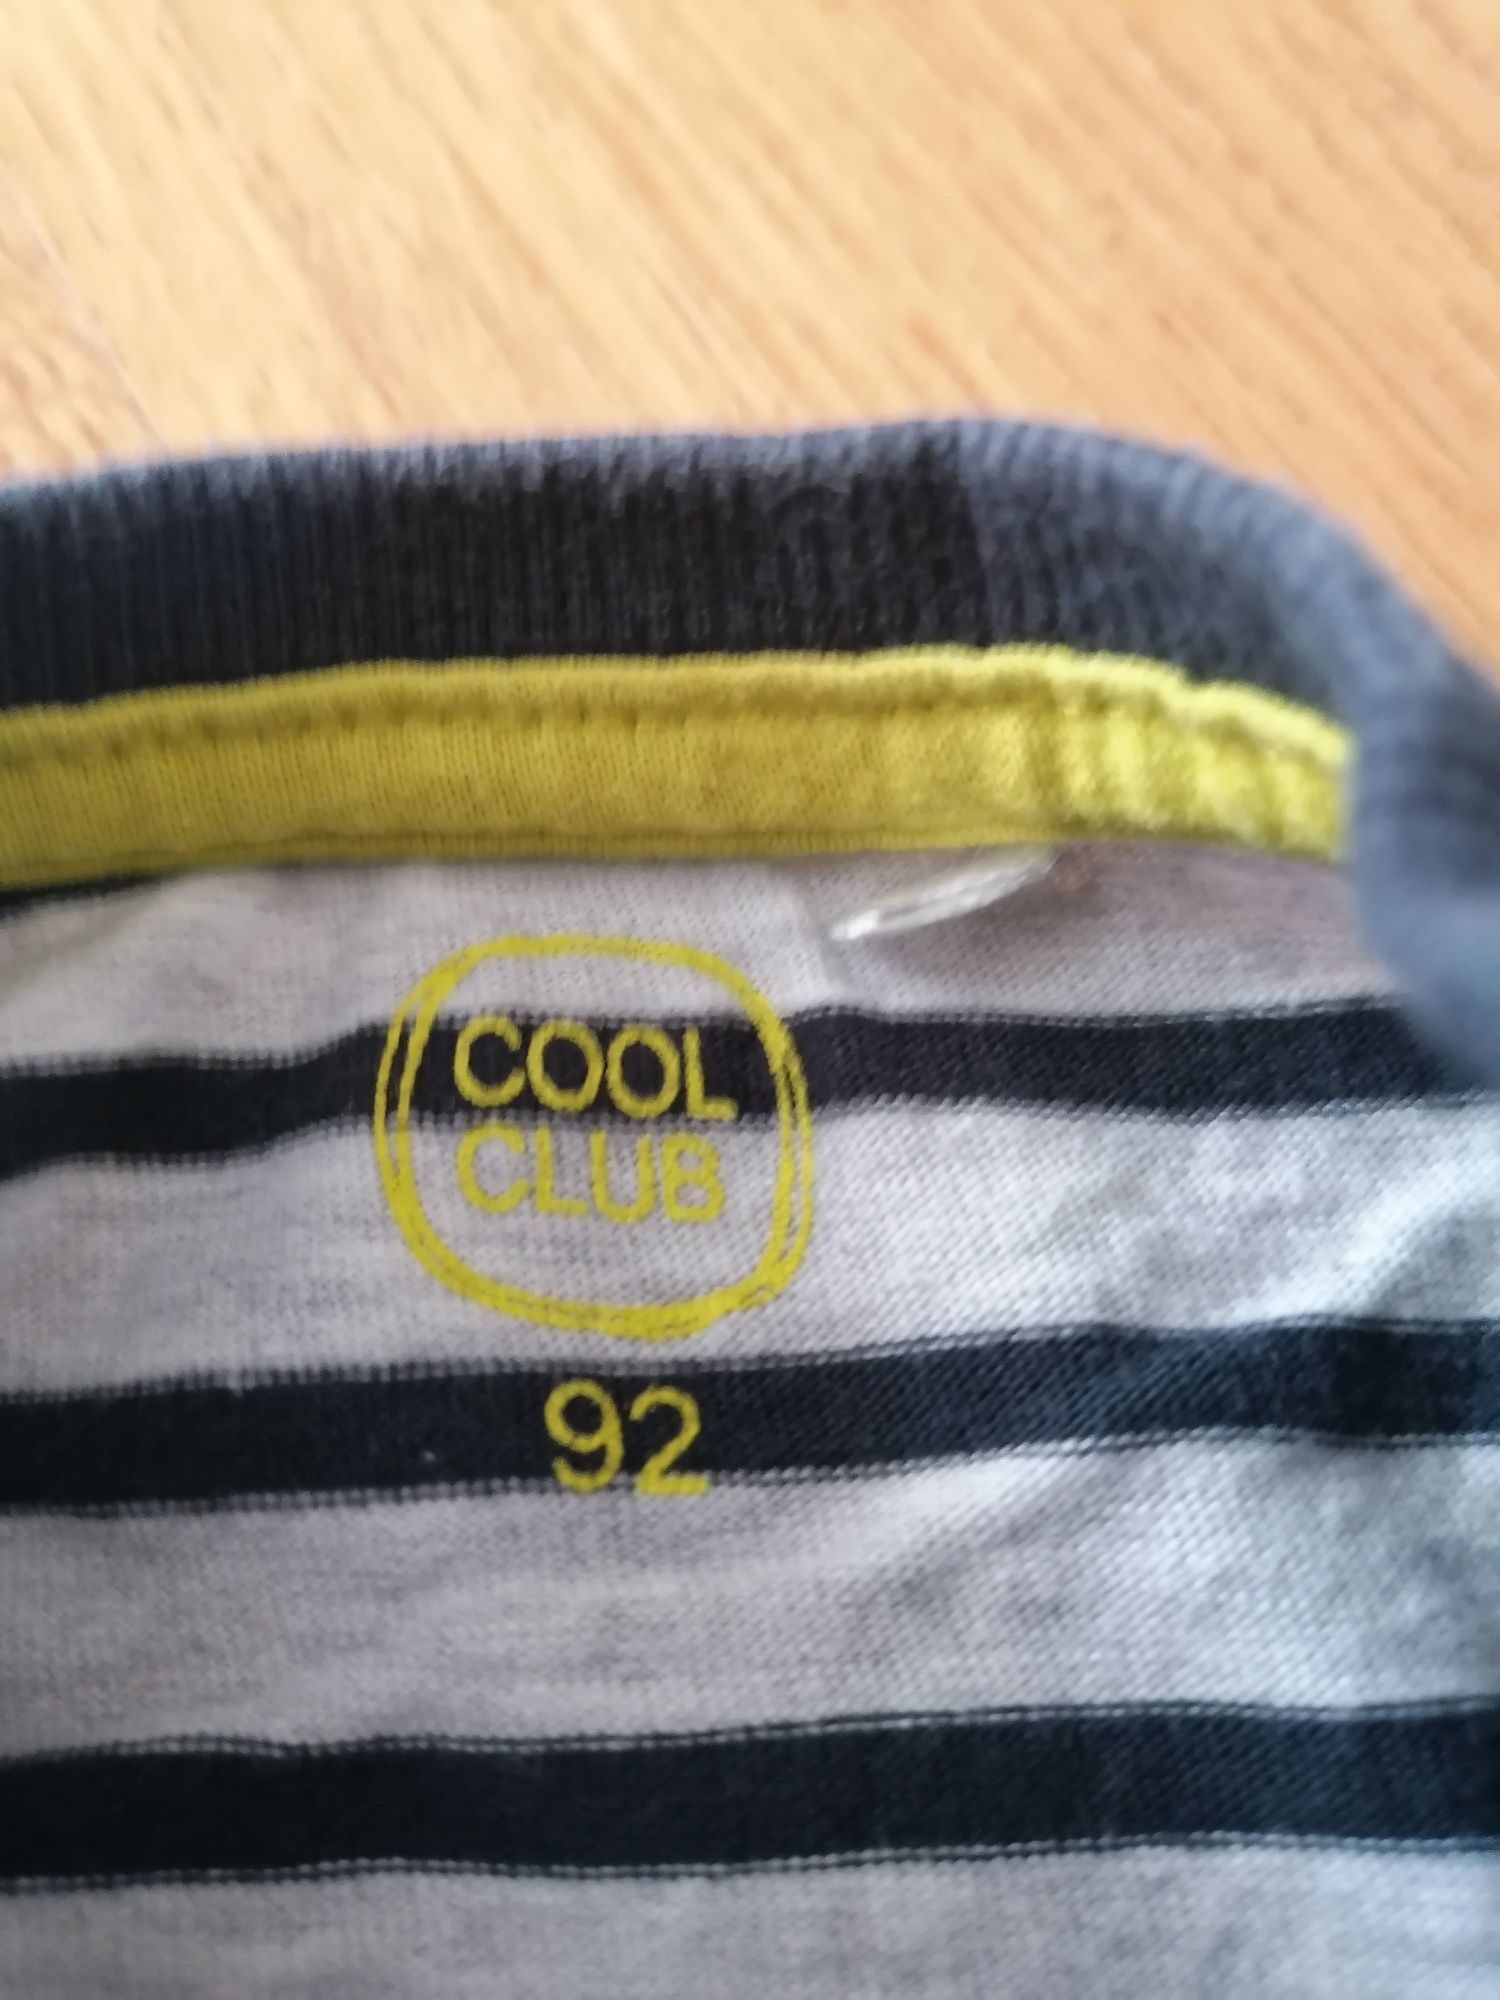 Koszulki długi rękaw bluzki chłopięce 92 Cool Club